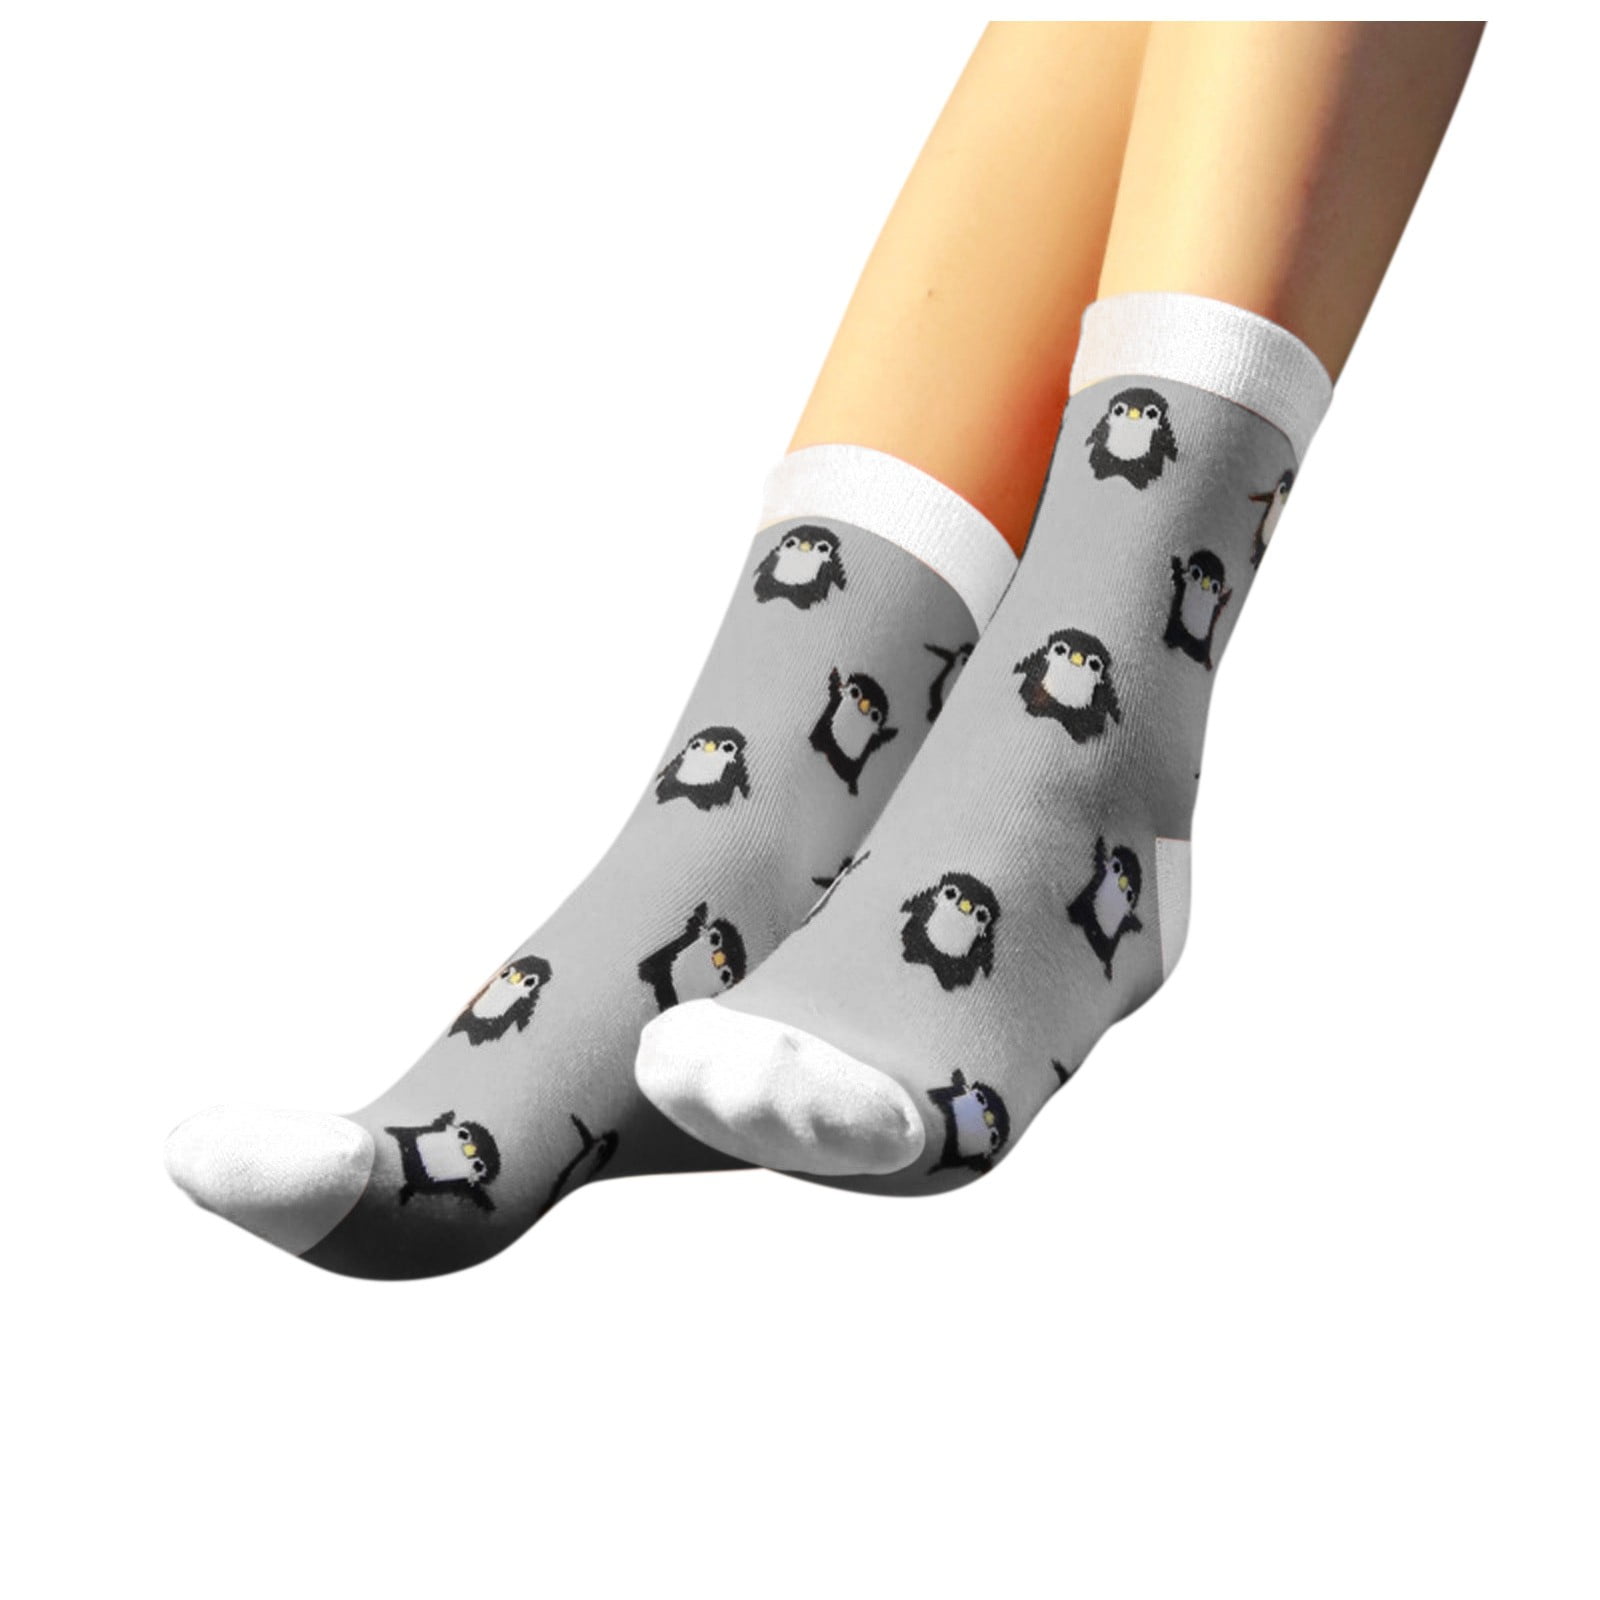 Tipi Toe Women's Fashion Novelty Animal Characters Cartoon Cat Panda Penguin Crew Socks 